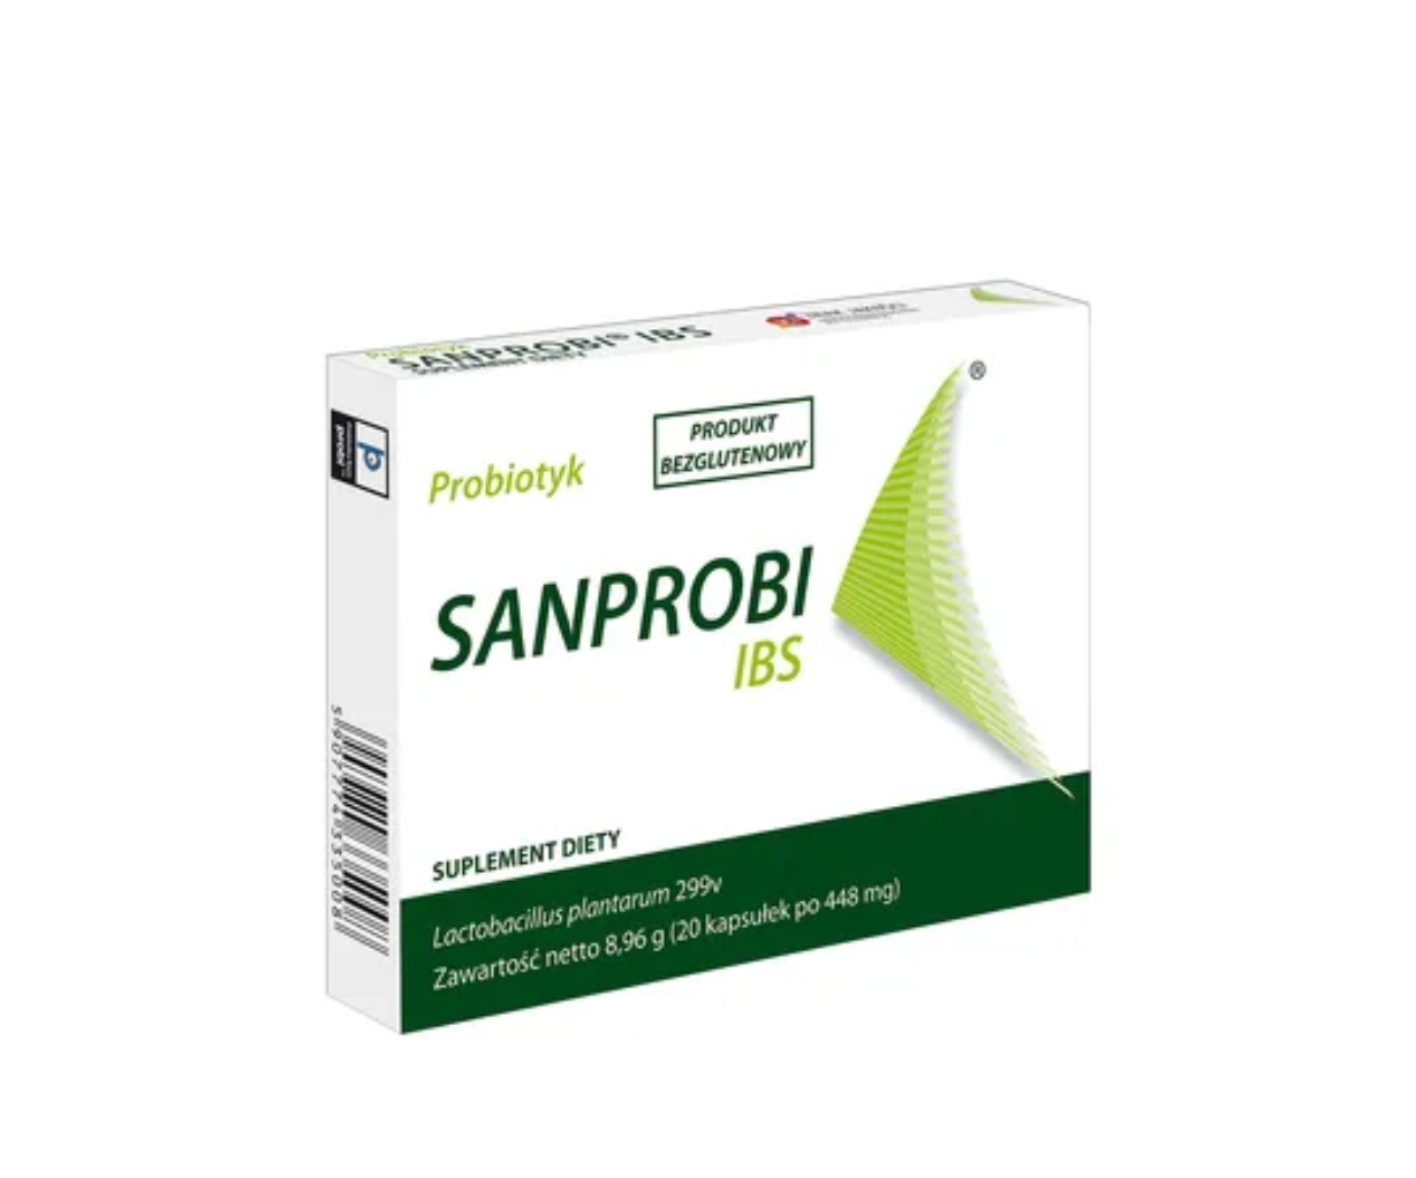 Sanprobi IBS, un integratore alimentare probiotico